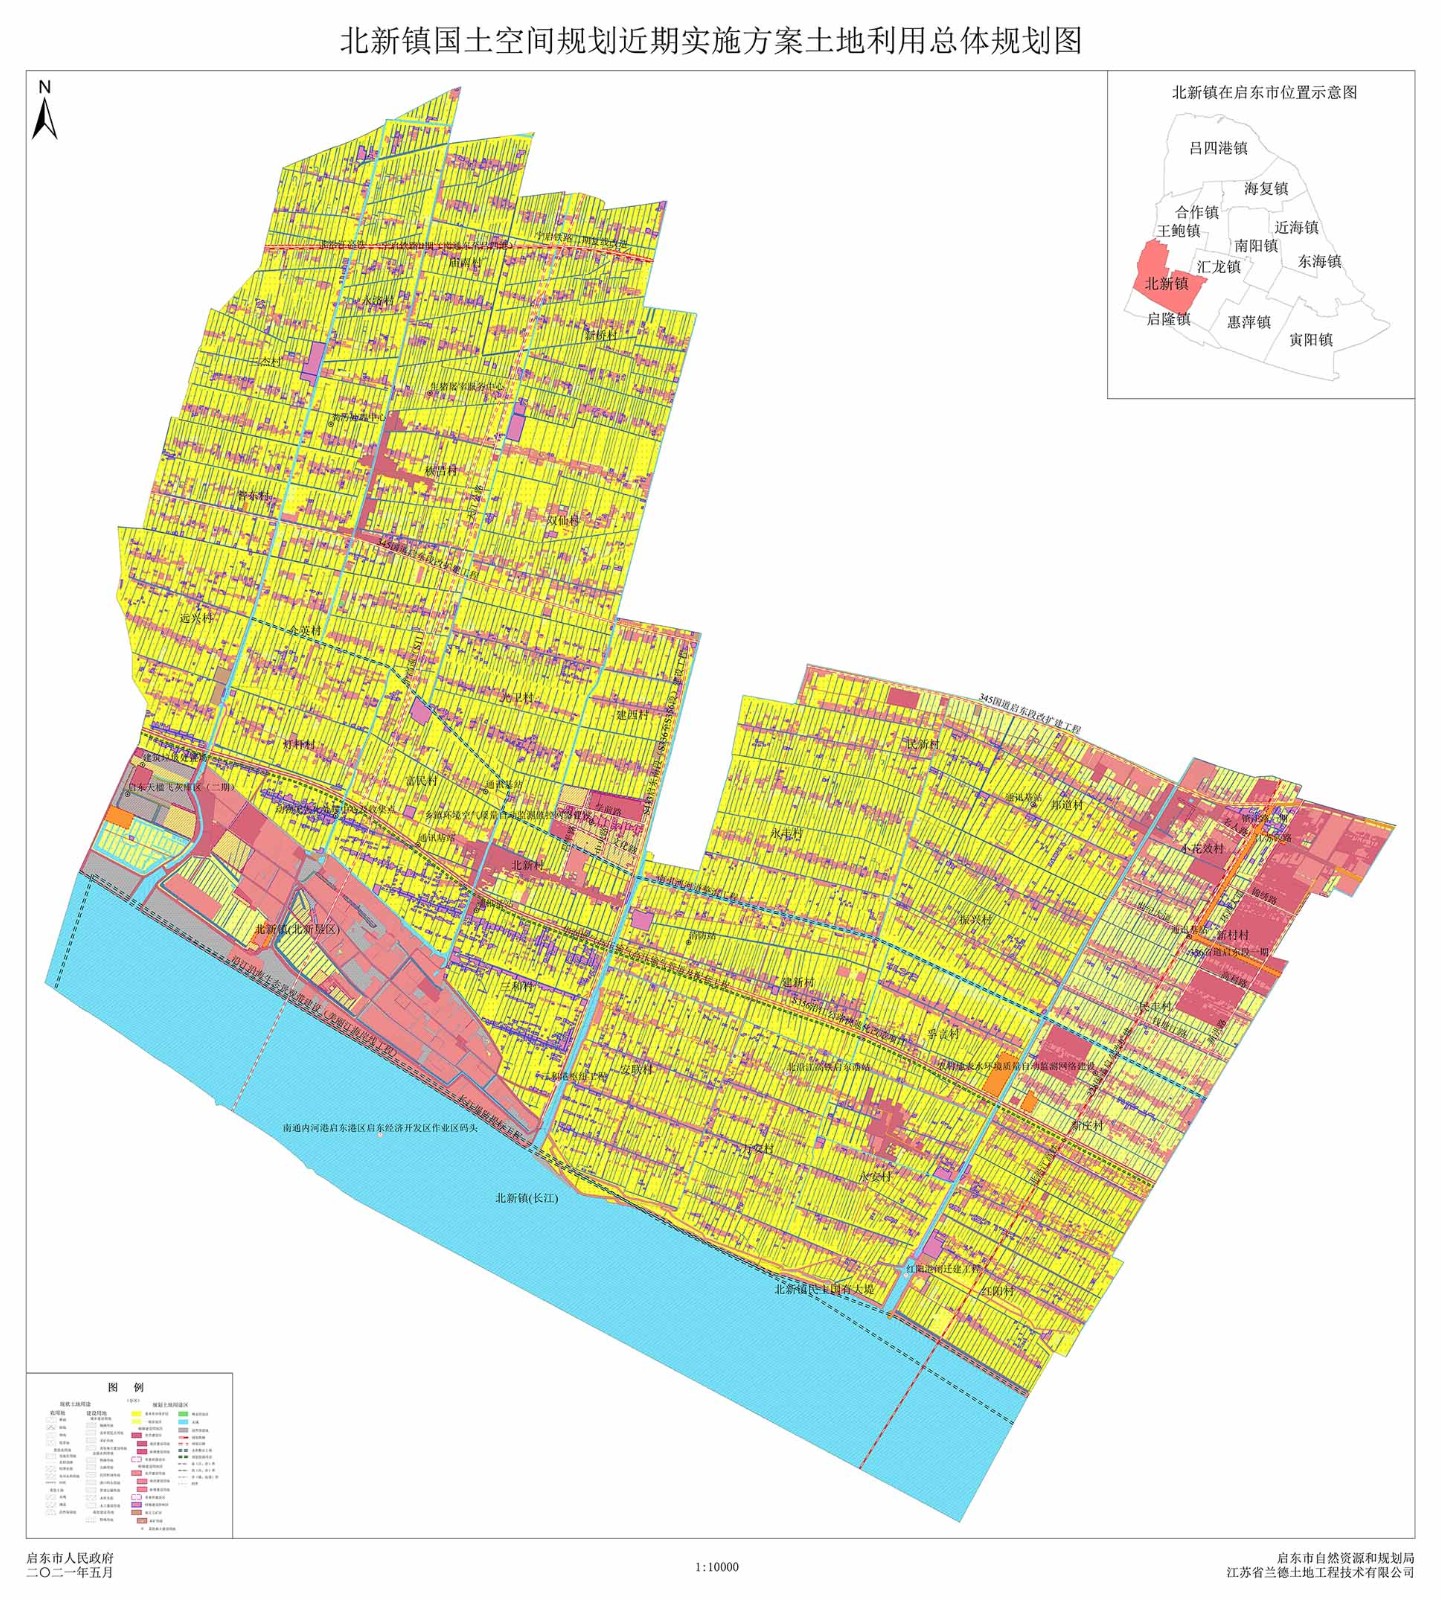 北新镇国土空间规划近期实施方案土地利用总体规划图.jpg